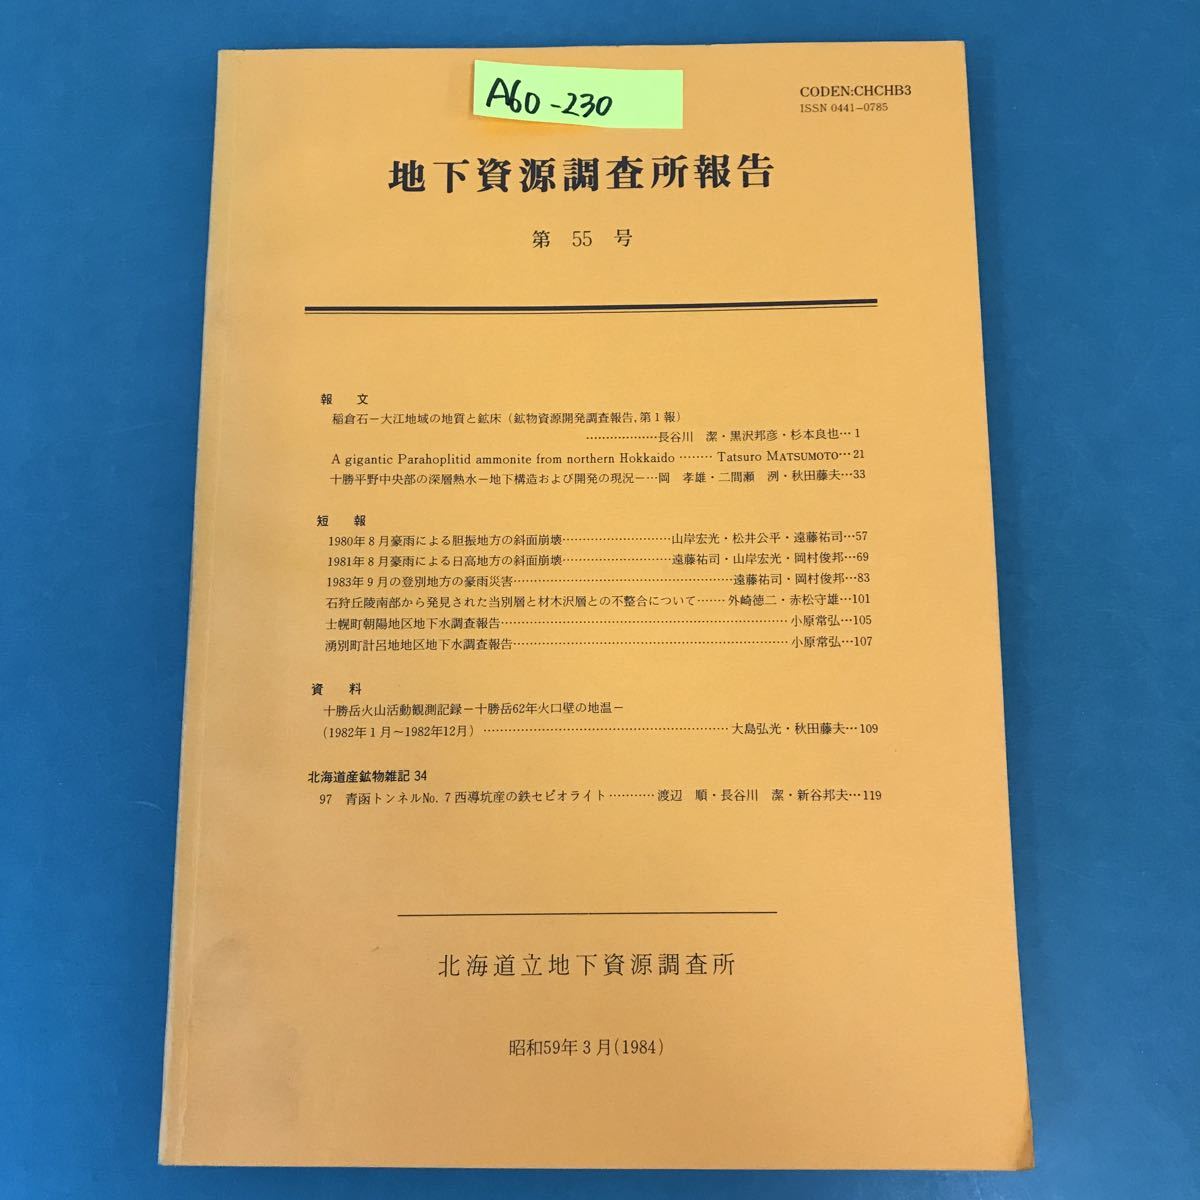 最も完璧な A60-230 地下資源調査所報告 昭和59年3月（1984） 北海道